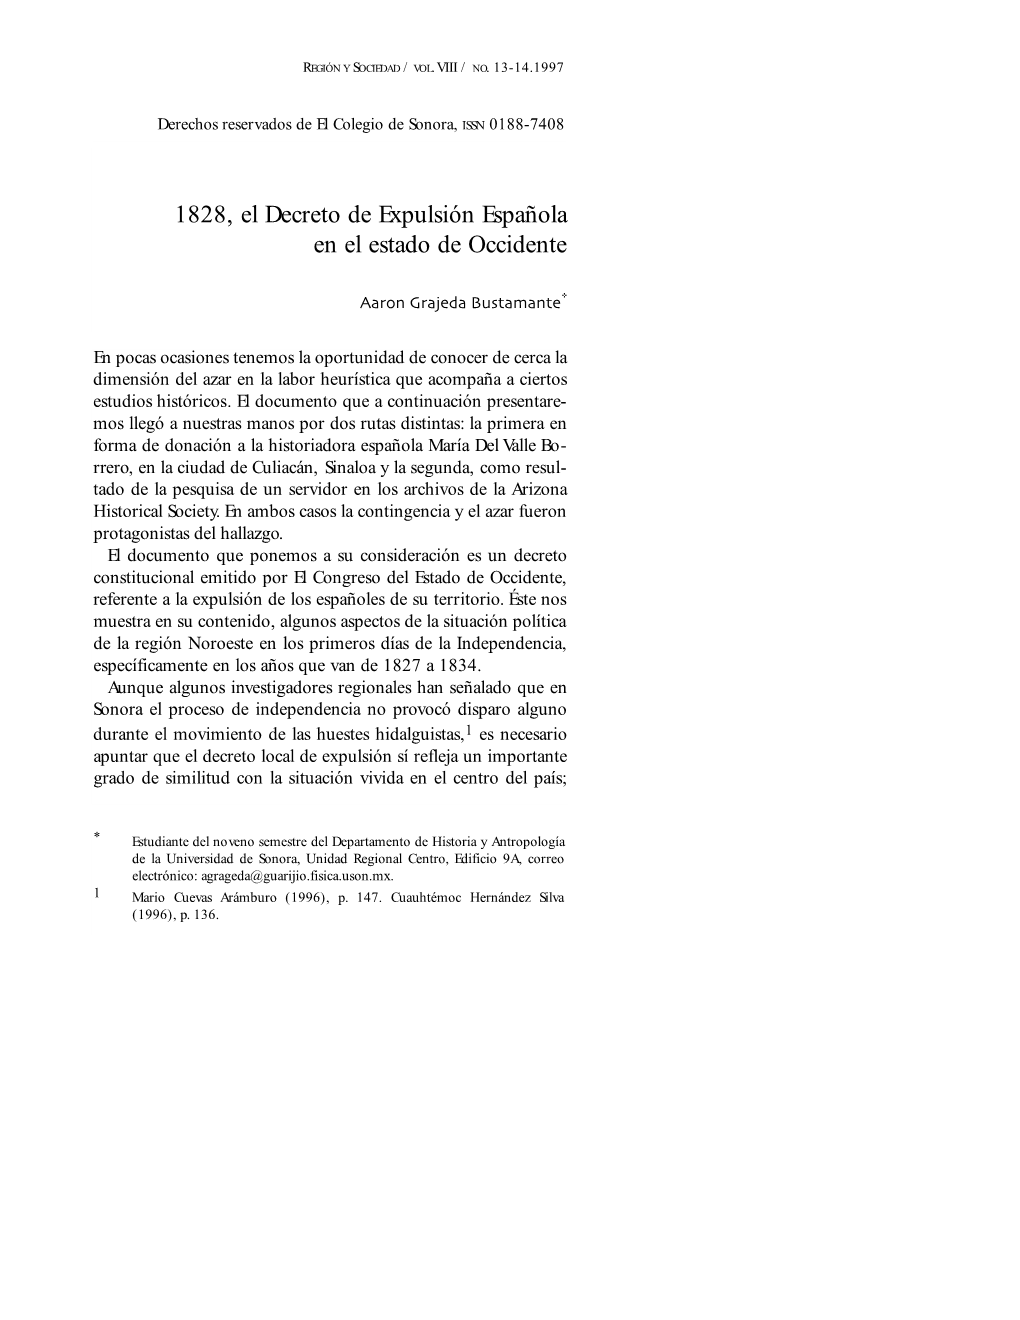 1828, El Decreto De Expulsion Espanola